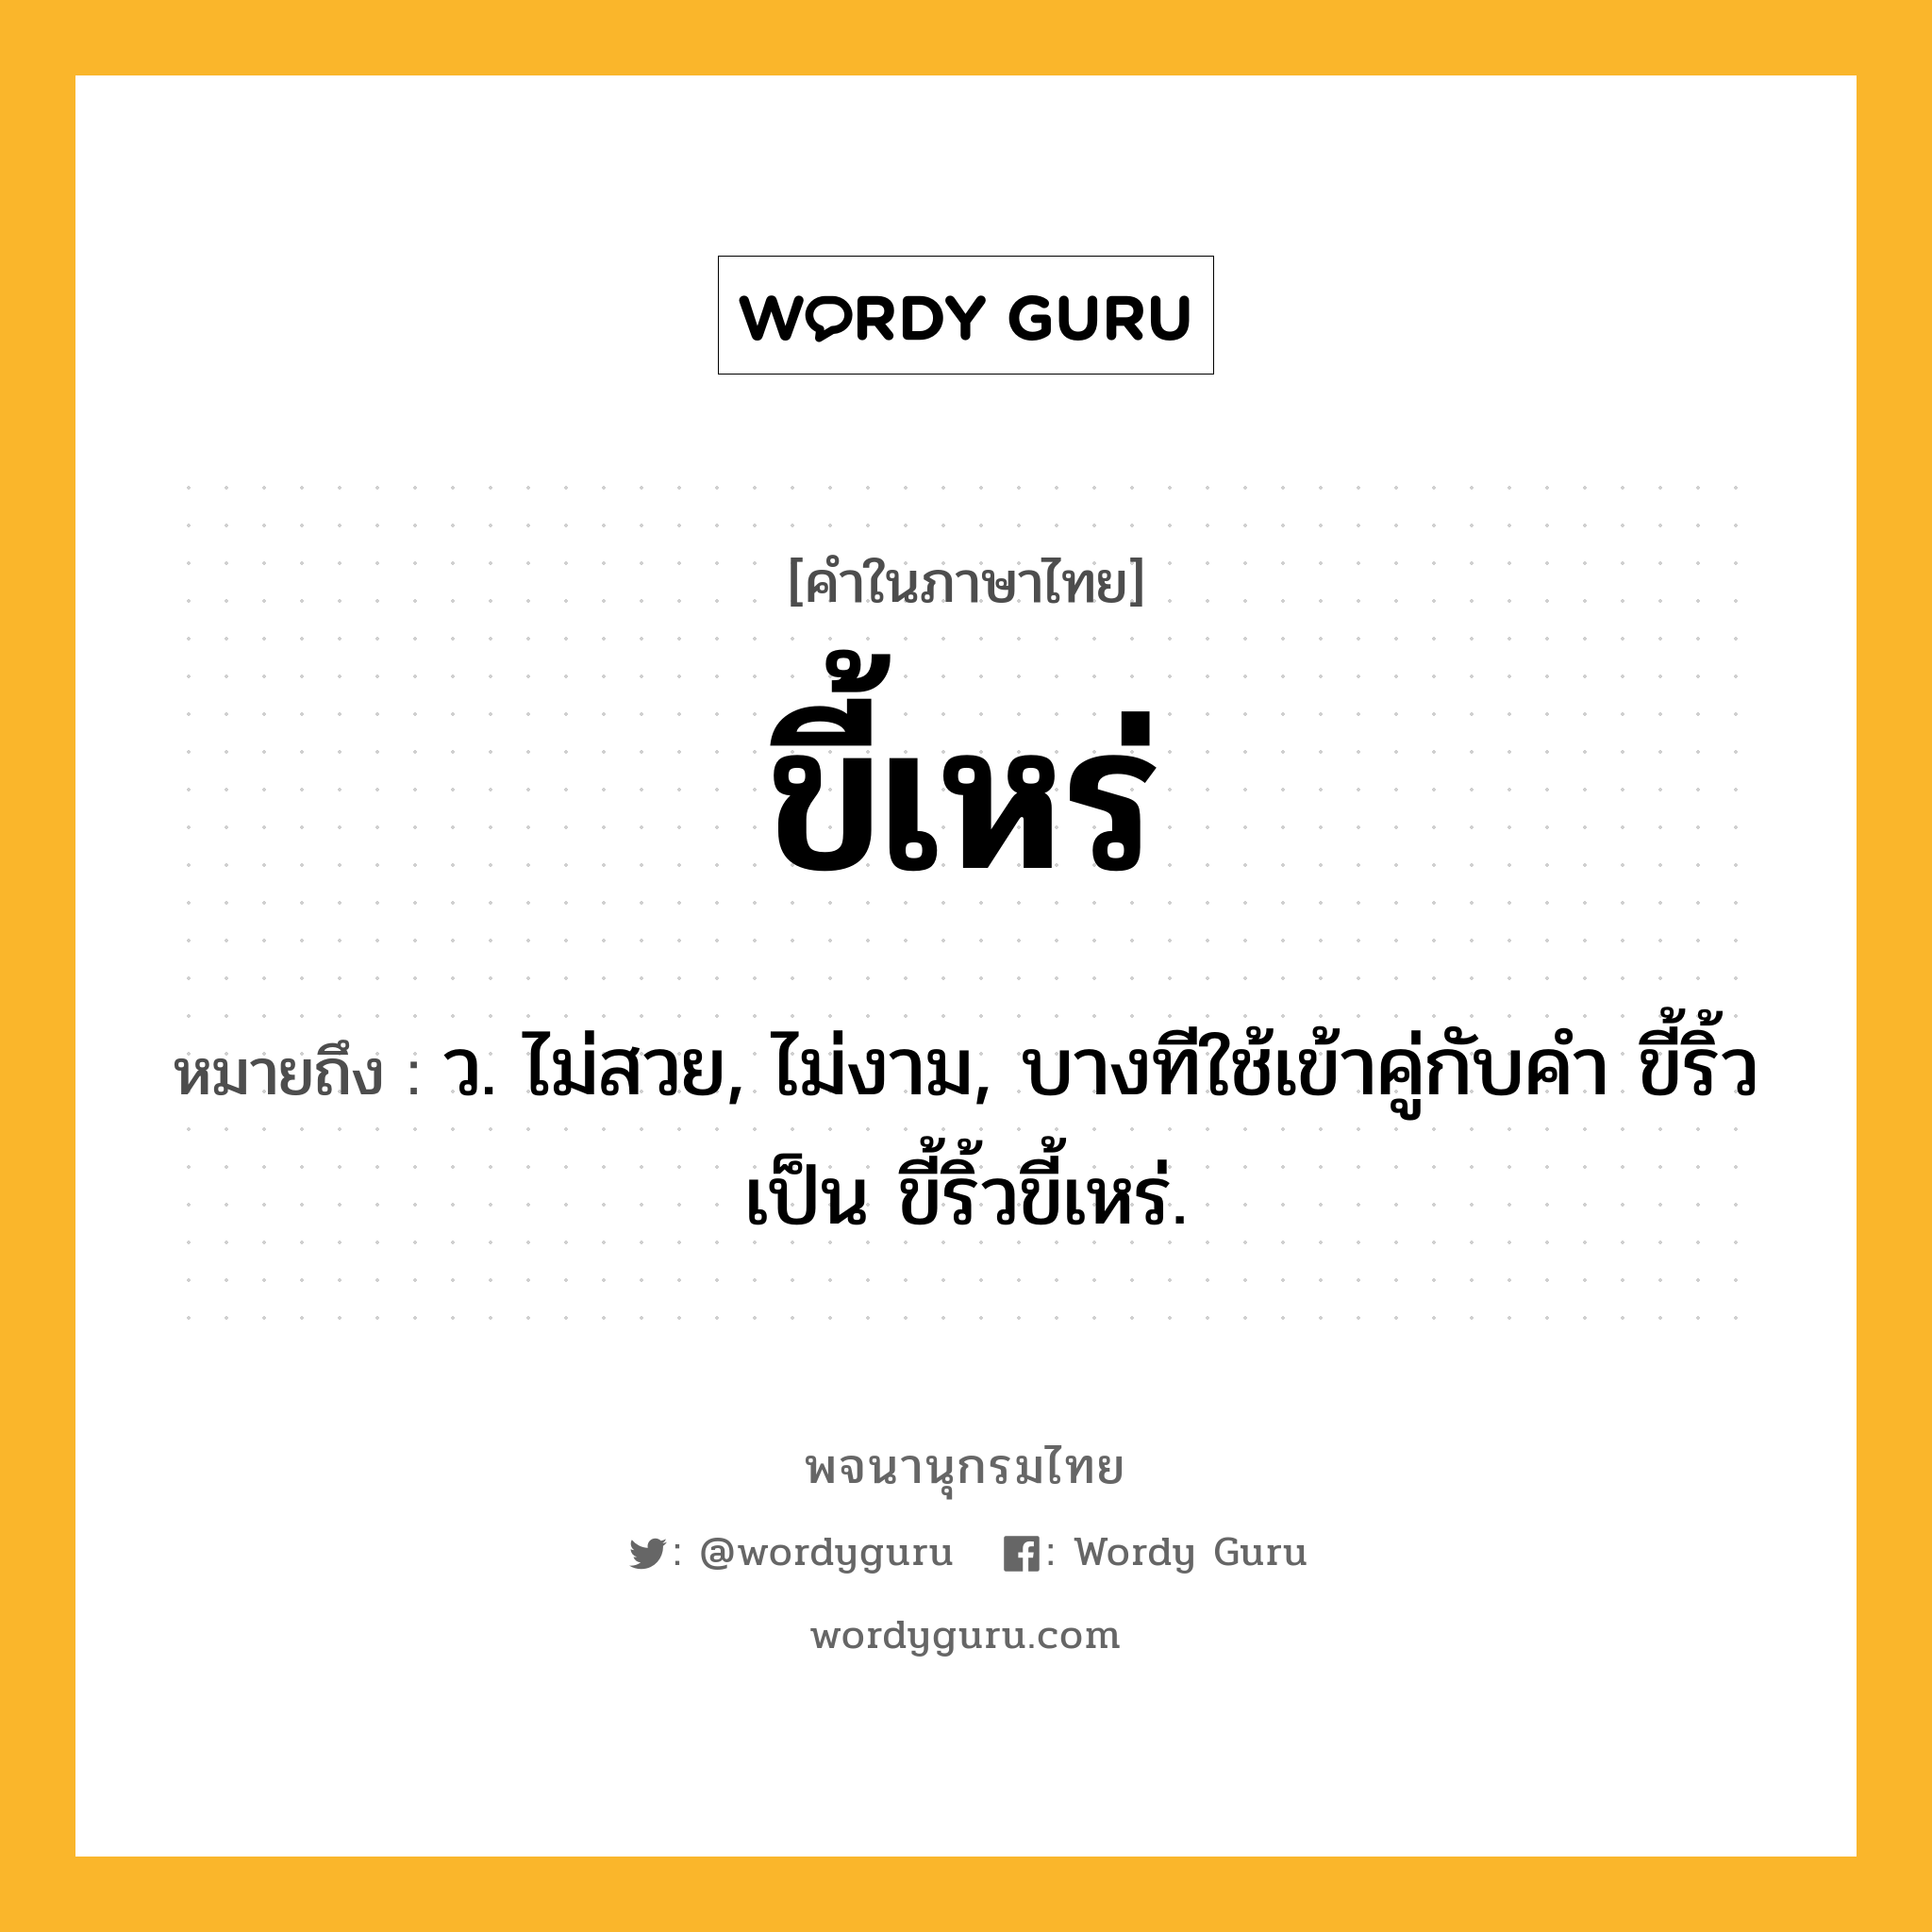 ขี้เหร่ หมายถึงอะไร?, คำในภาษาไทย ขี้เหร่ หมายถึง ว. ไม่สวย, ไม่งาม, บางทีใช้เข้าคู่กับคำ ขี้ริ้ว เป็น ขี้ริ้วขี้เหร่.